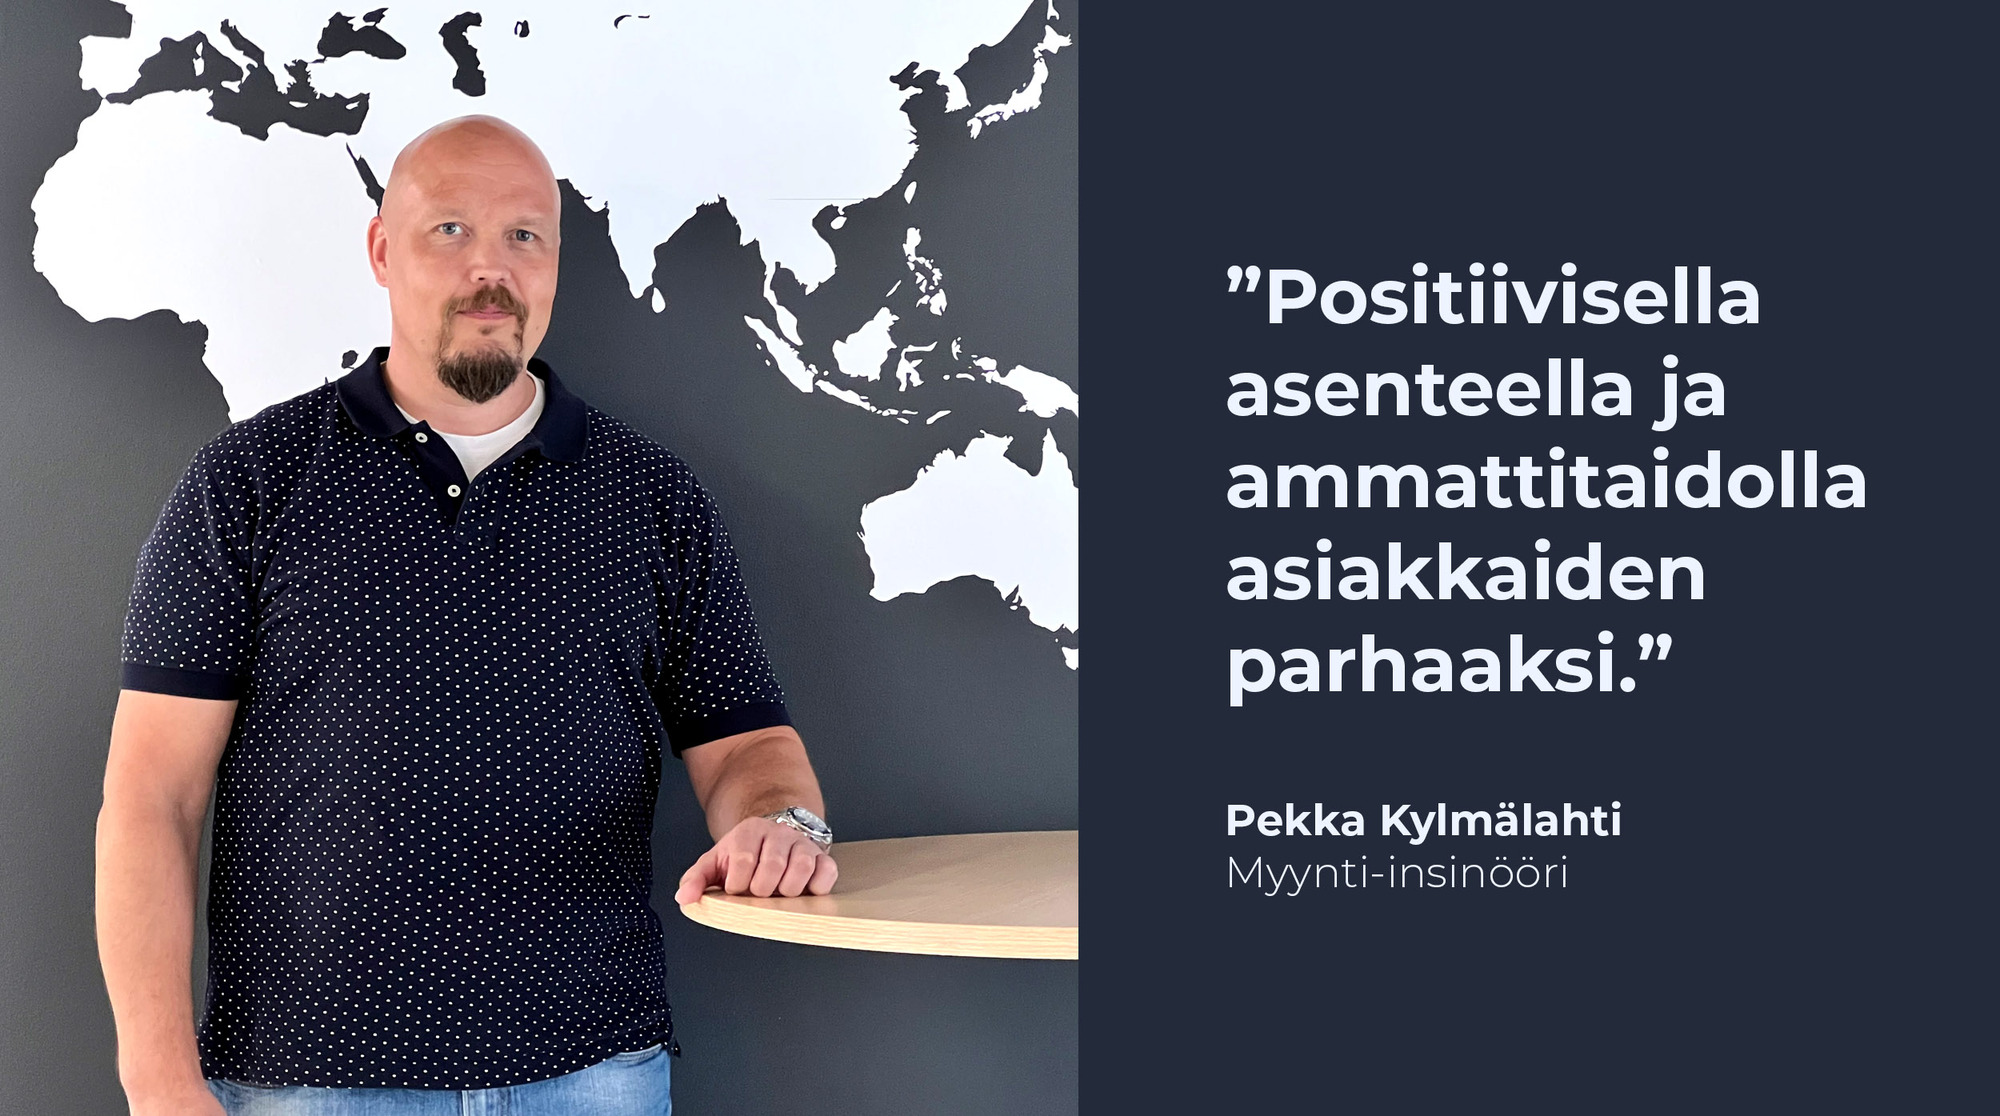 Pekka Kylmälahti, Sammetin Myynti-insinööri